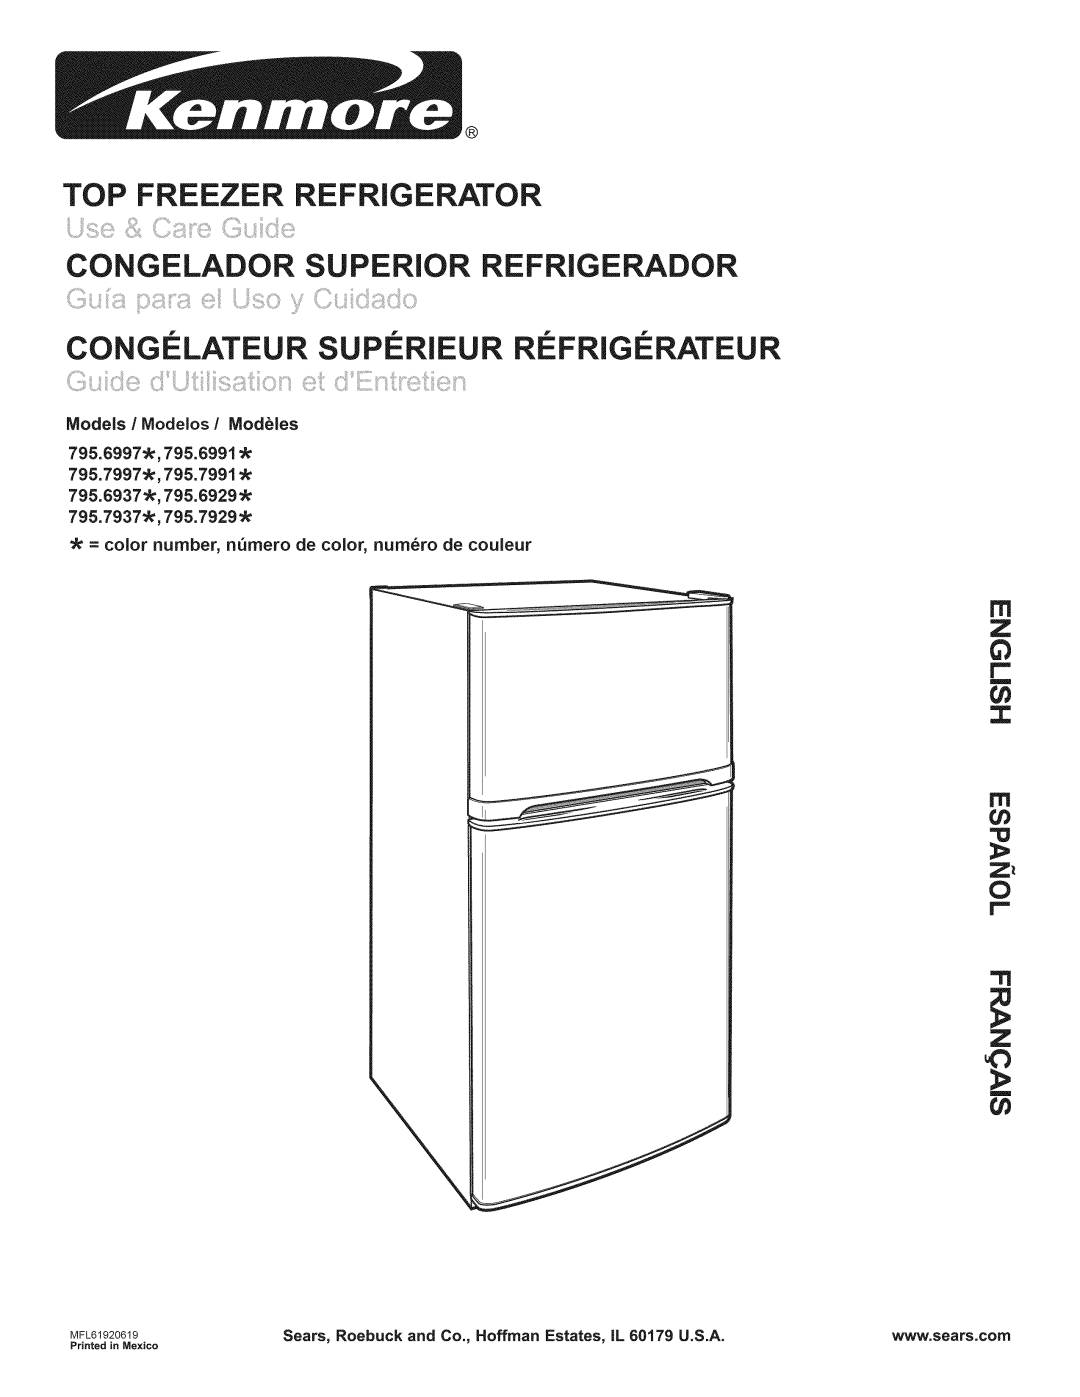 Kenmore 795.6397, 795.6991 manual Top Freezer Refrigerator, cn z, Congelador Superior Refrigerador, 795.7937 ,795.7929 